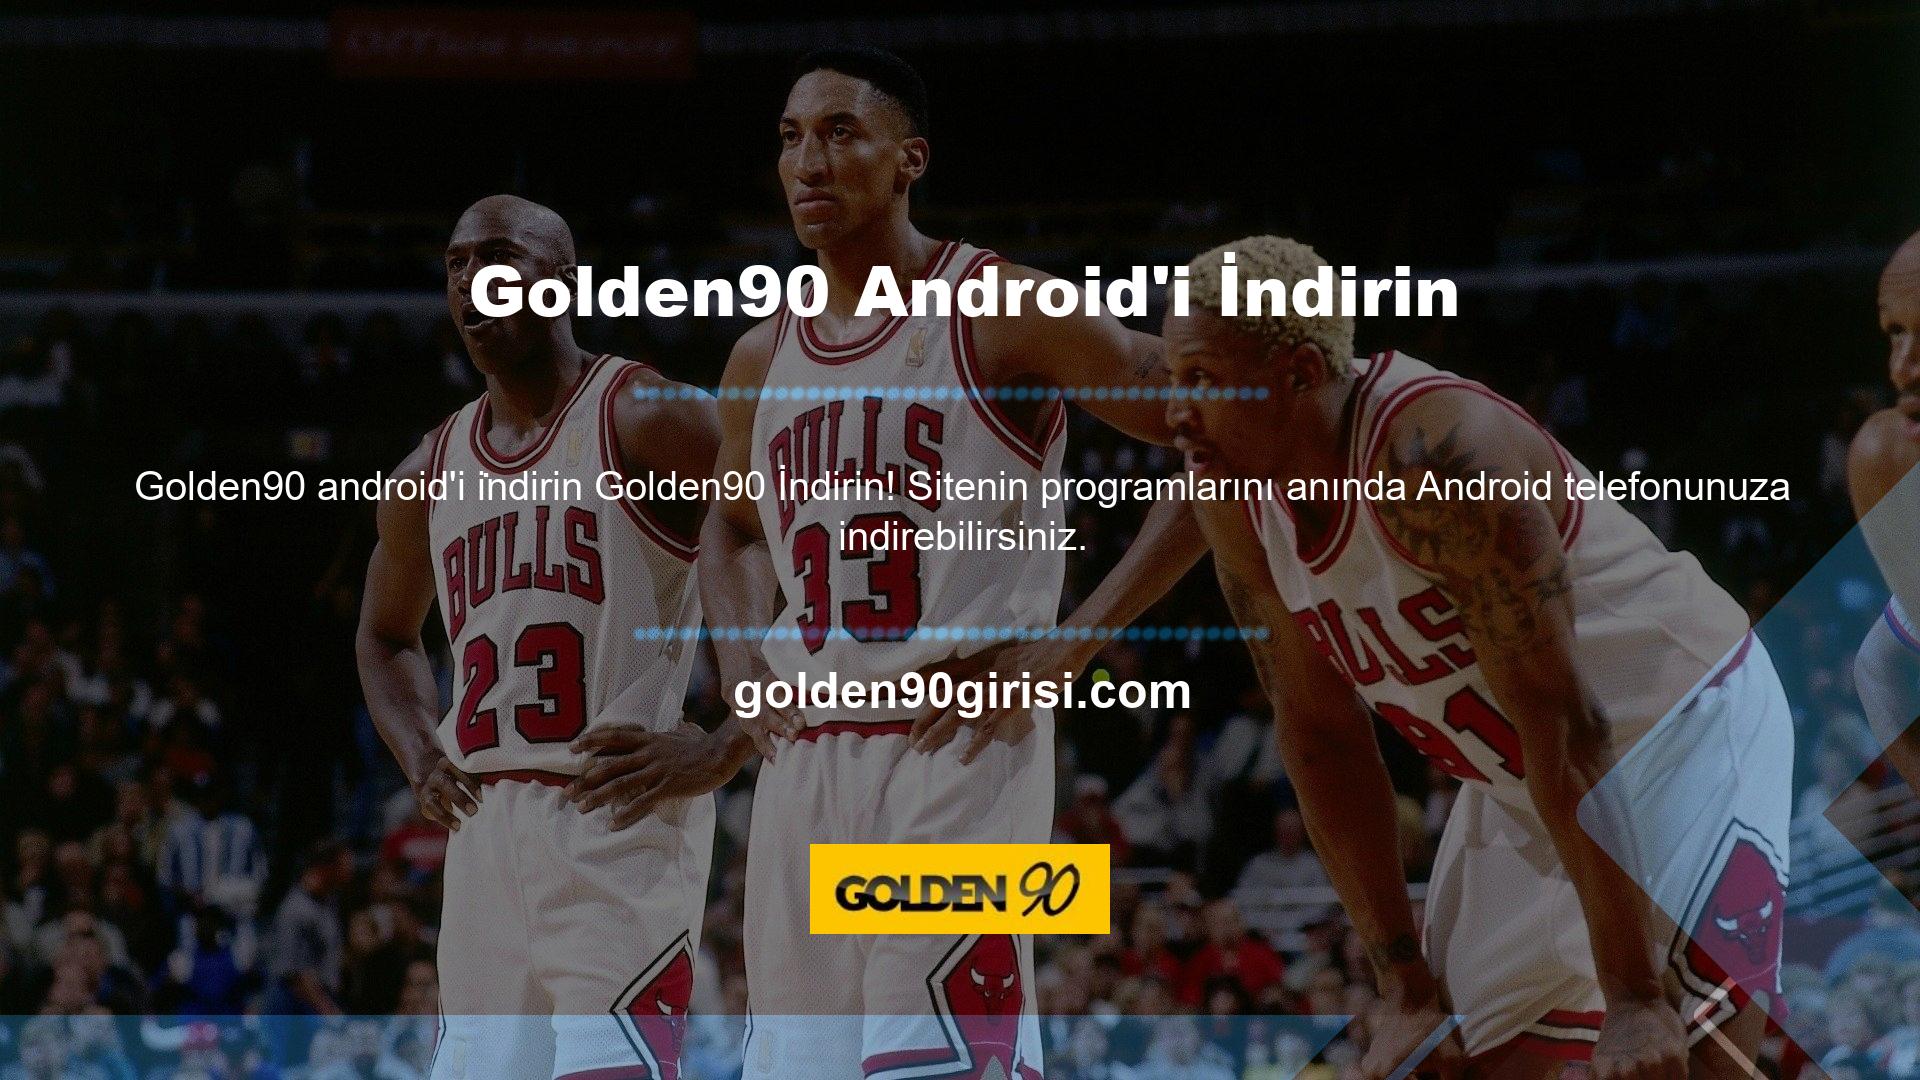 Sistem, iOS uygulamasının yanı sıra açık Android programına sahip Golden90 cep telefonlarına da ücretsiz olarak indirilebiliyor